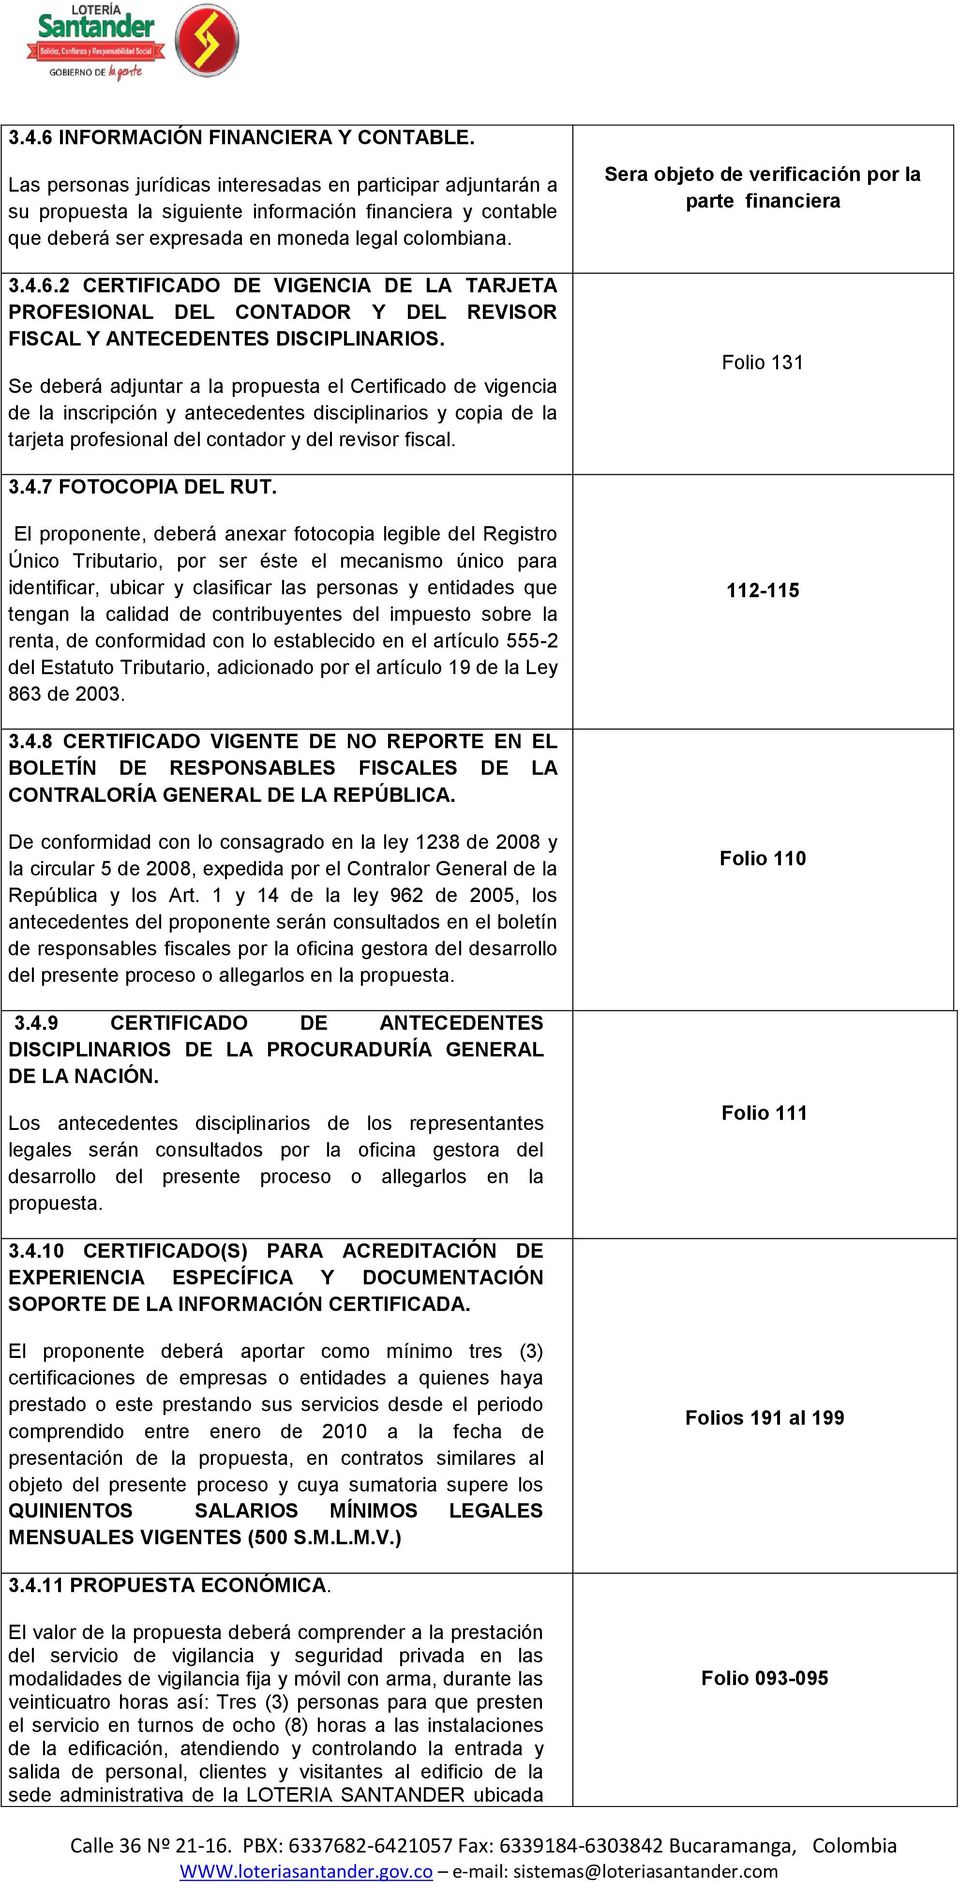 2 CERTIFICADO DE VIGENCIA DE LA TARJETA PROFESIONAL DEL CONTADOR Y DEL REVISOR FISCAL Y ANTECEDENTES DISCIPLINARIOS.